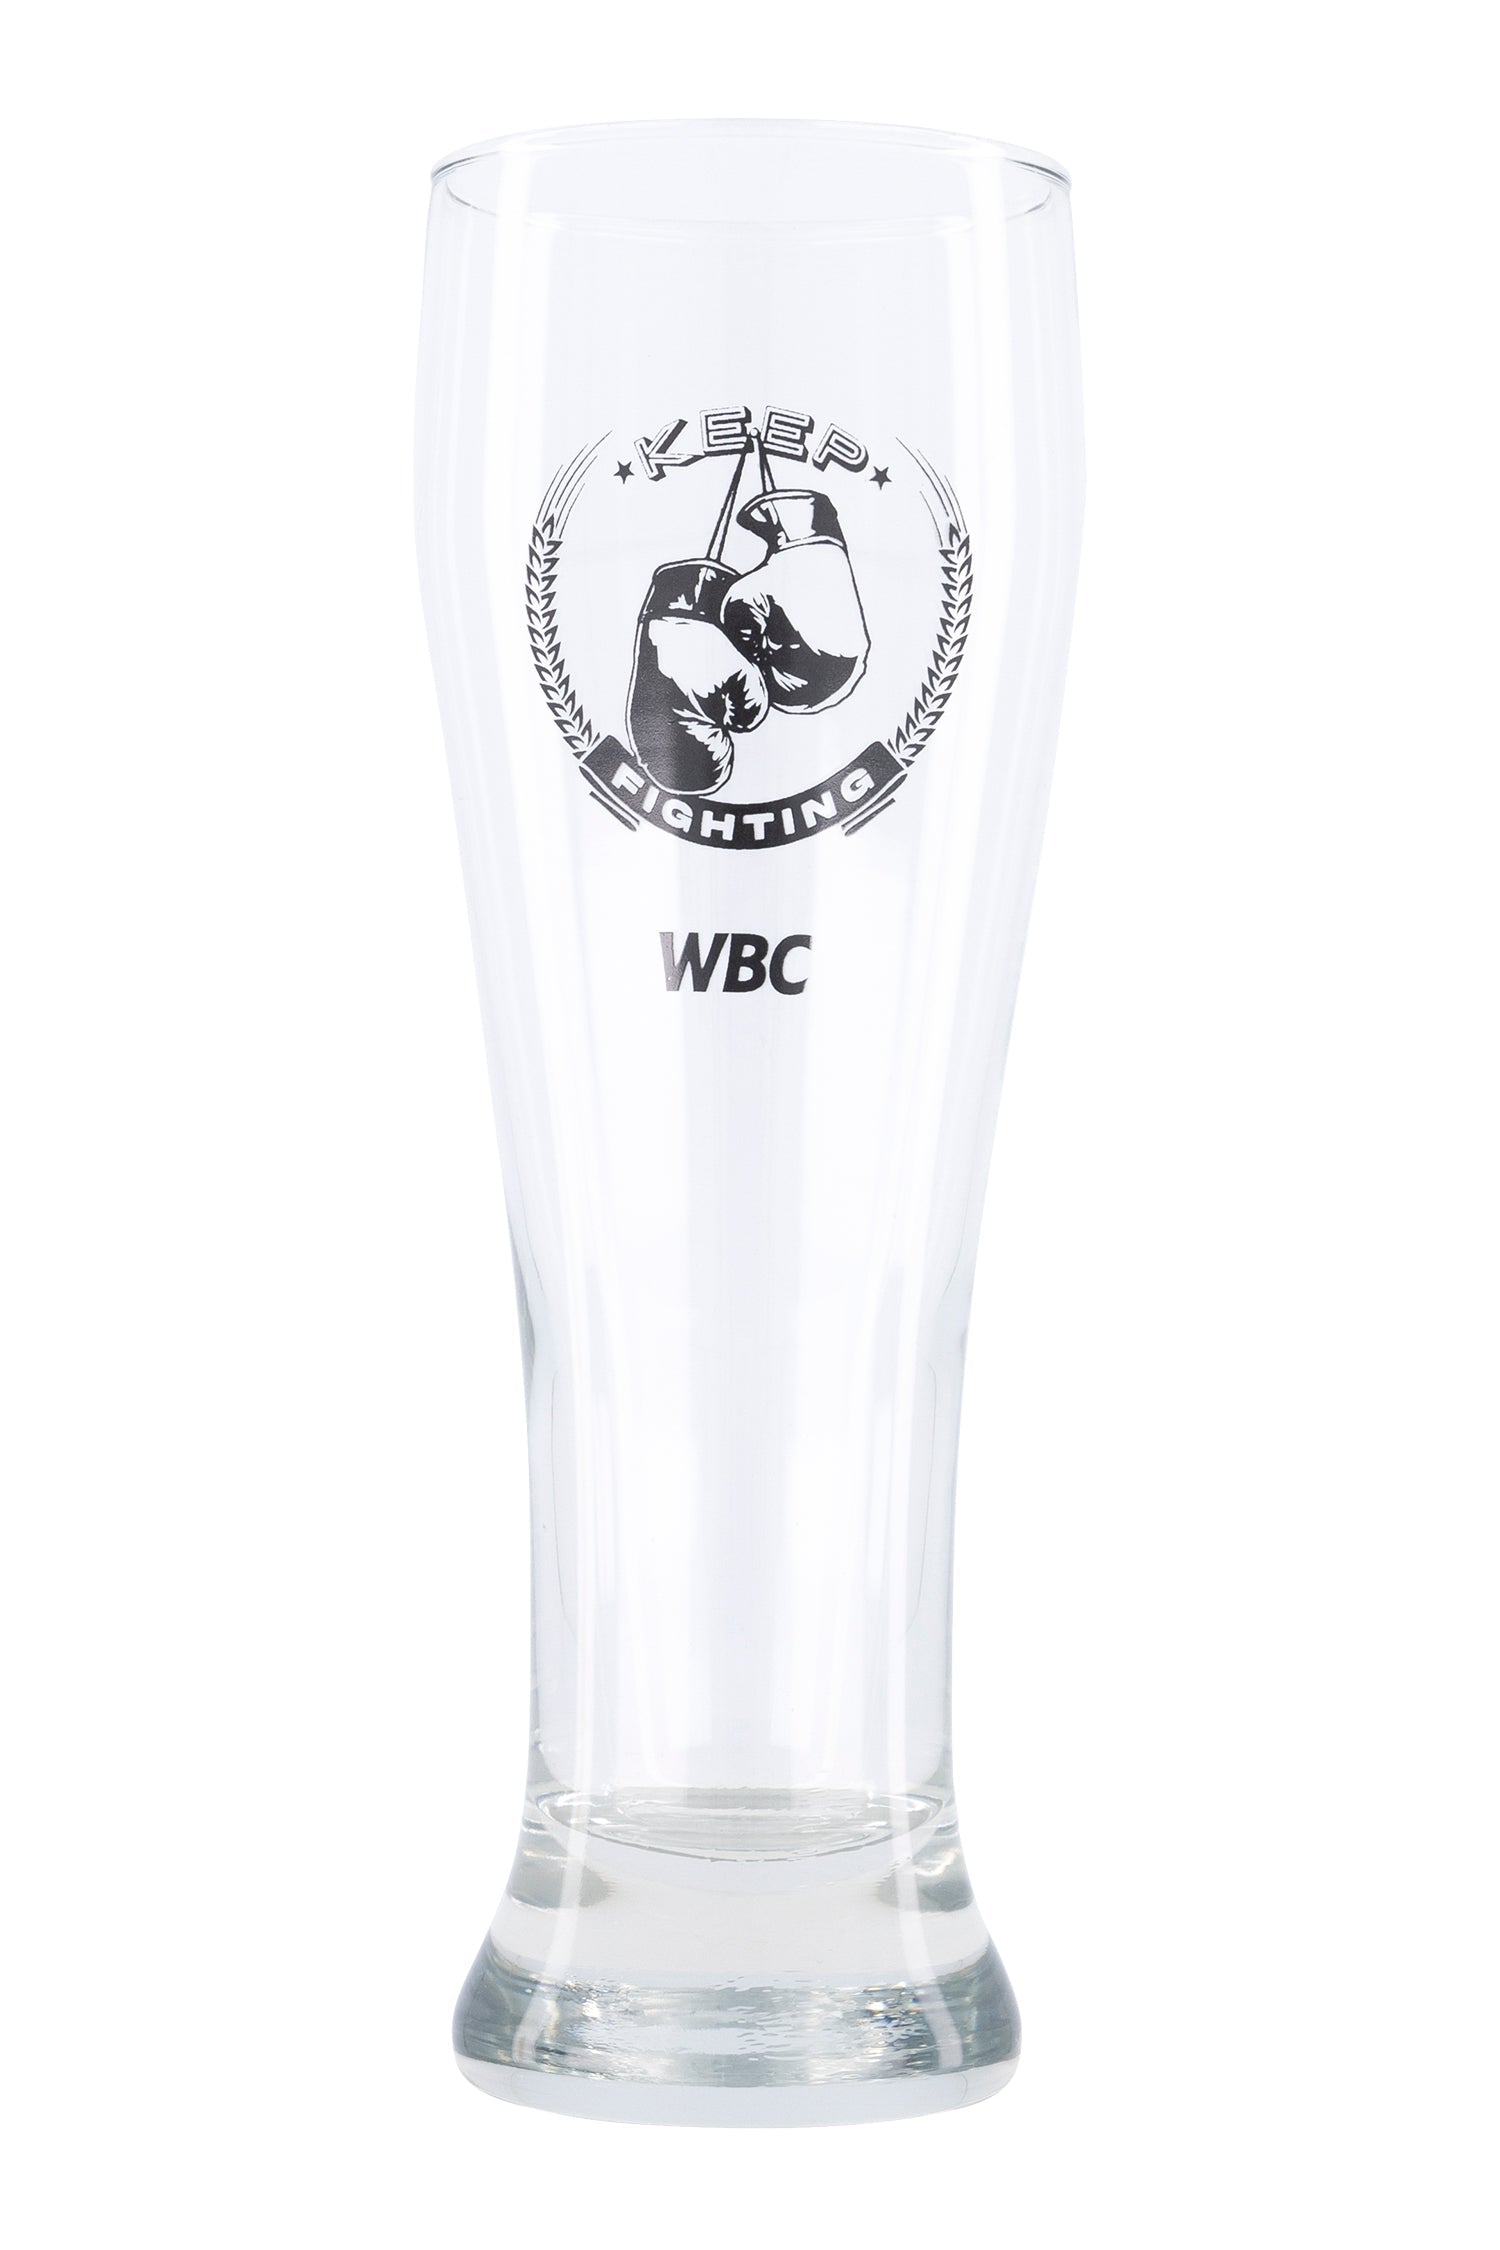 WBC Store WBC Beer glass Keep Fighting